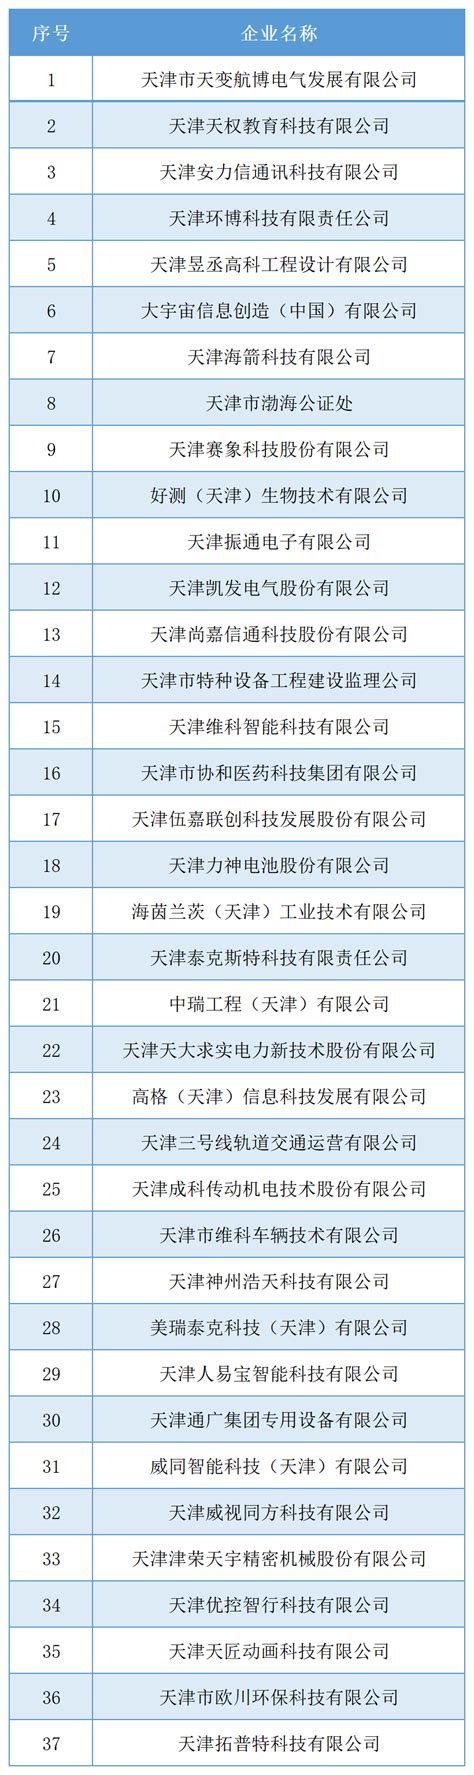 2022年天津市河北区教师招聘招聘人数和报考条件和笔试面试考试内容的详细分析 - 知乎